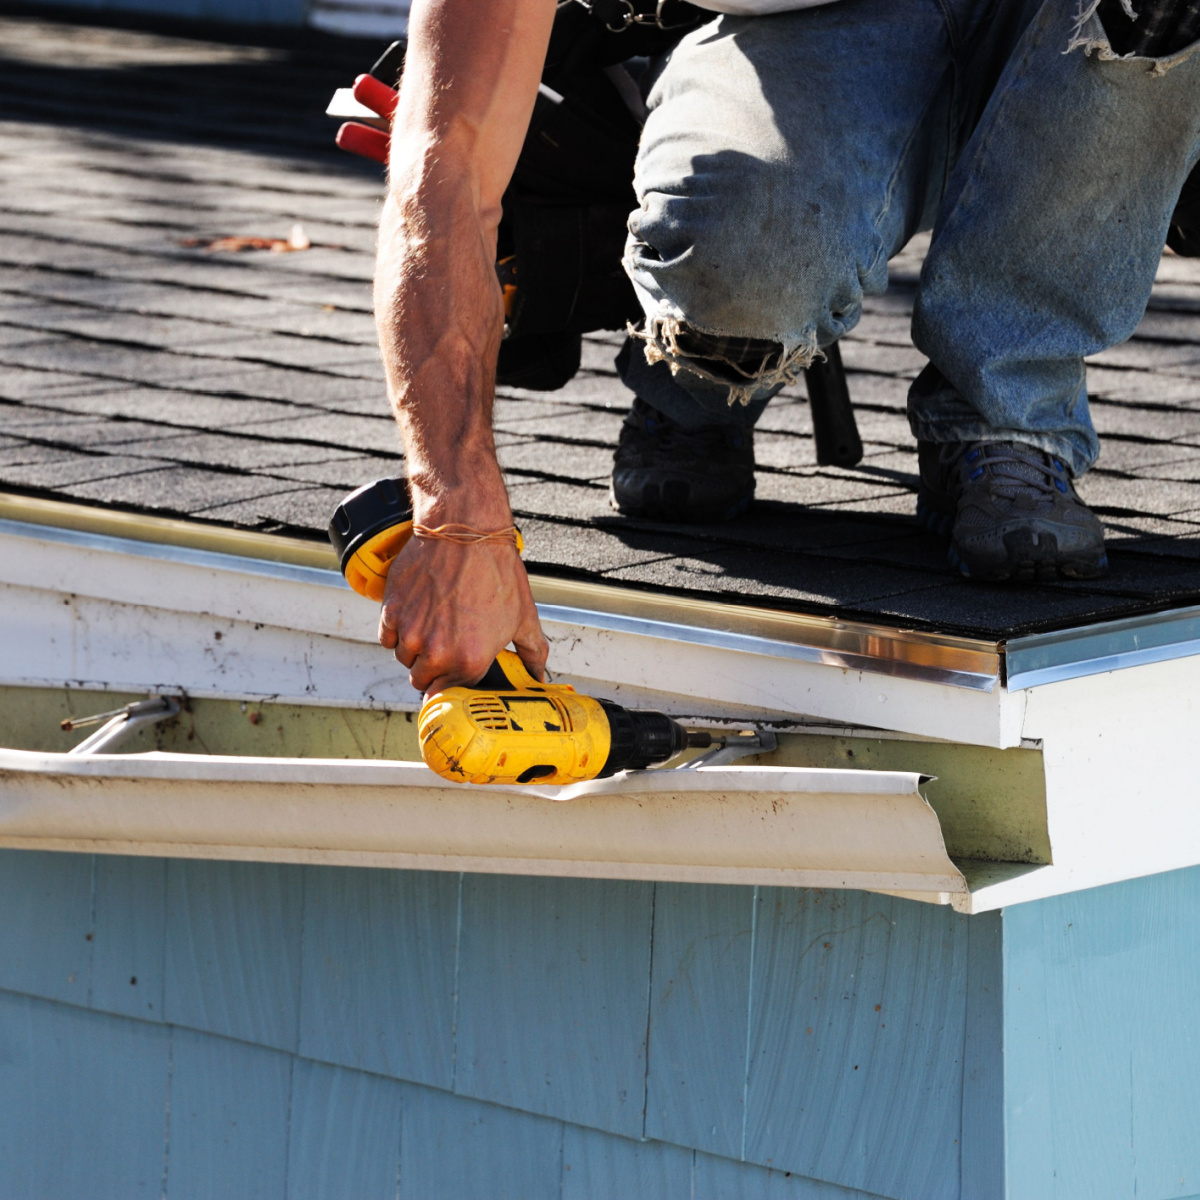 A man repairing roof gutters